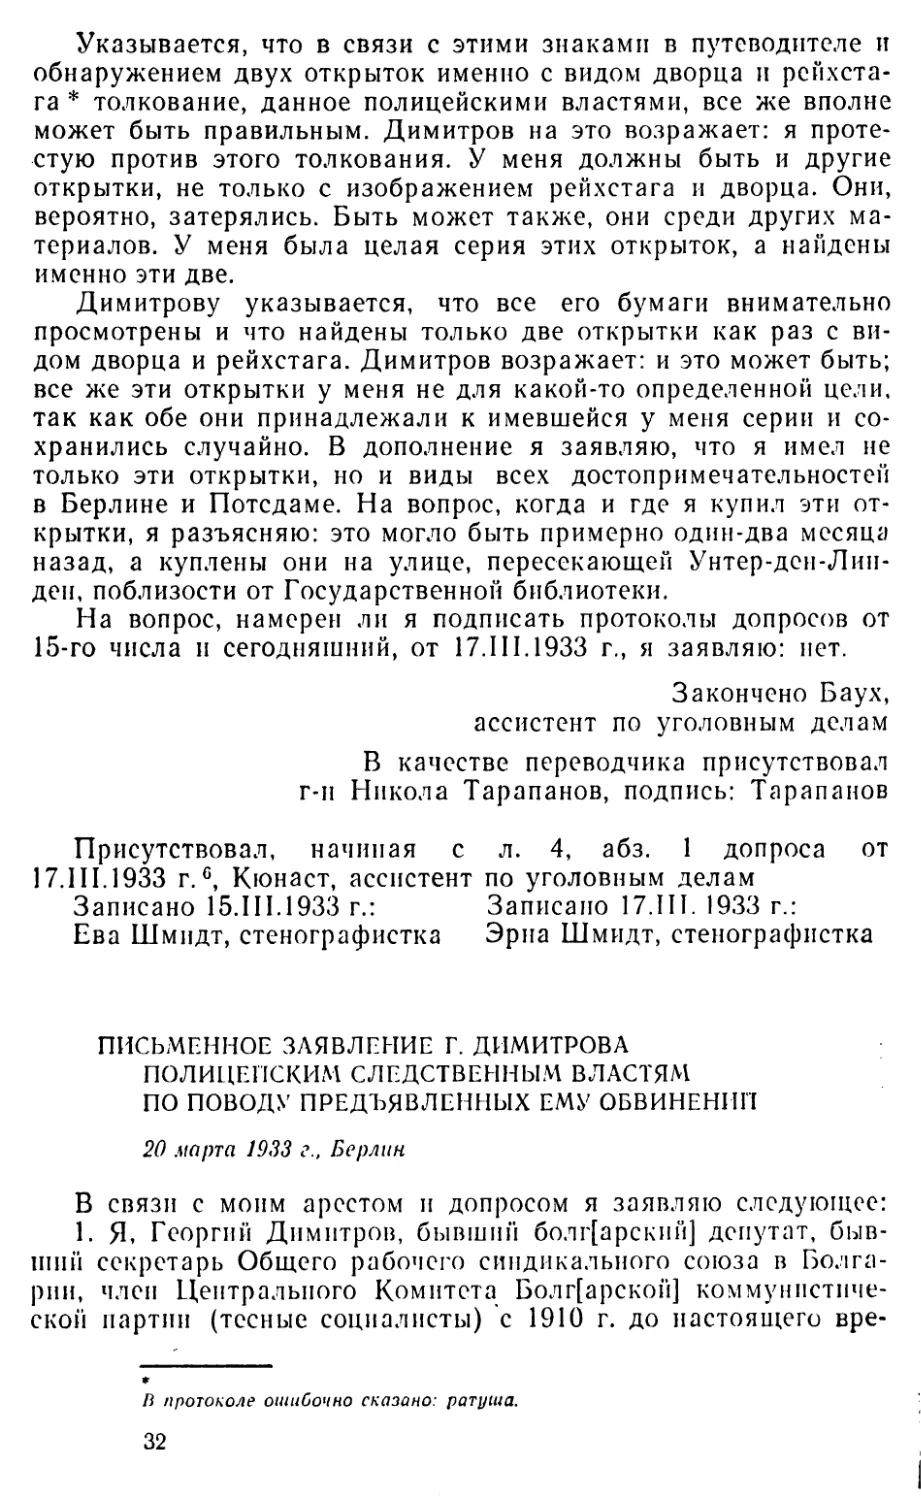 Письменное заявление Г. Димитрова полицейским следственным властям по поводу предъявленных ему обвинений. 20 марта 1933 г